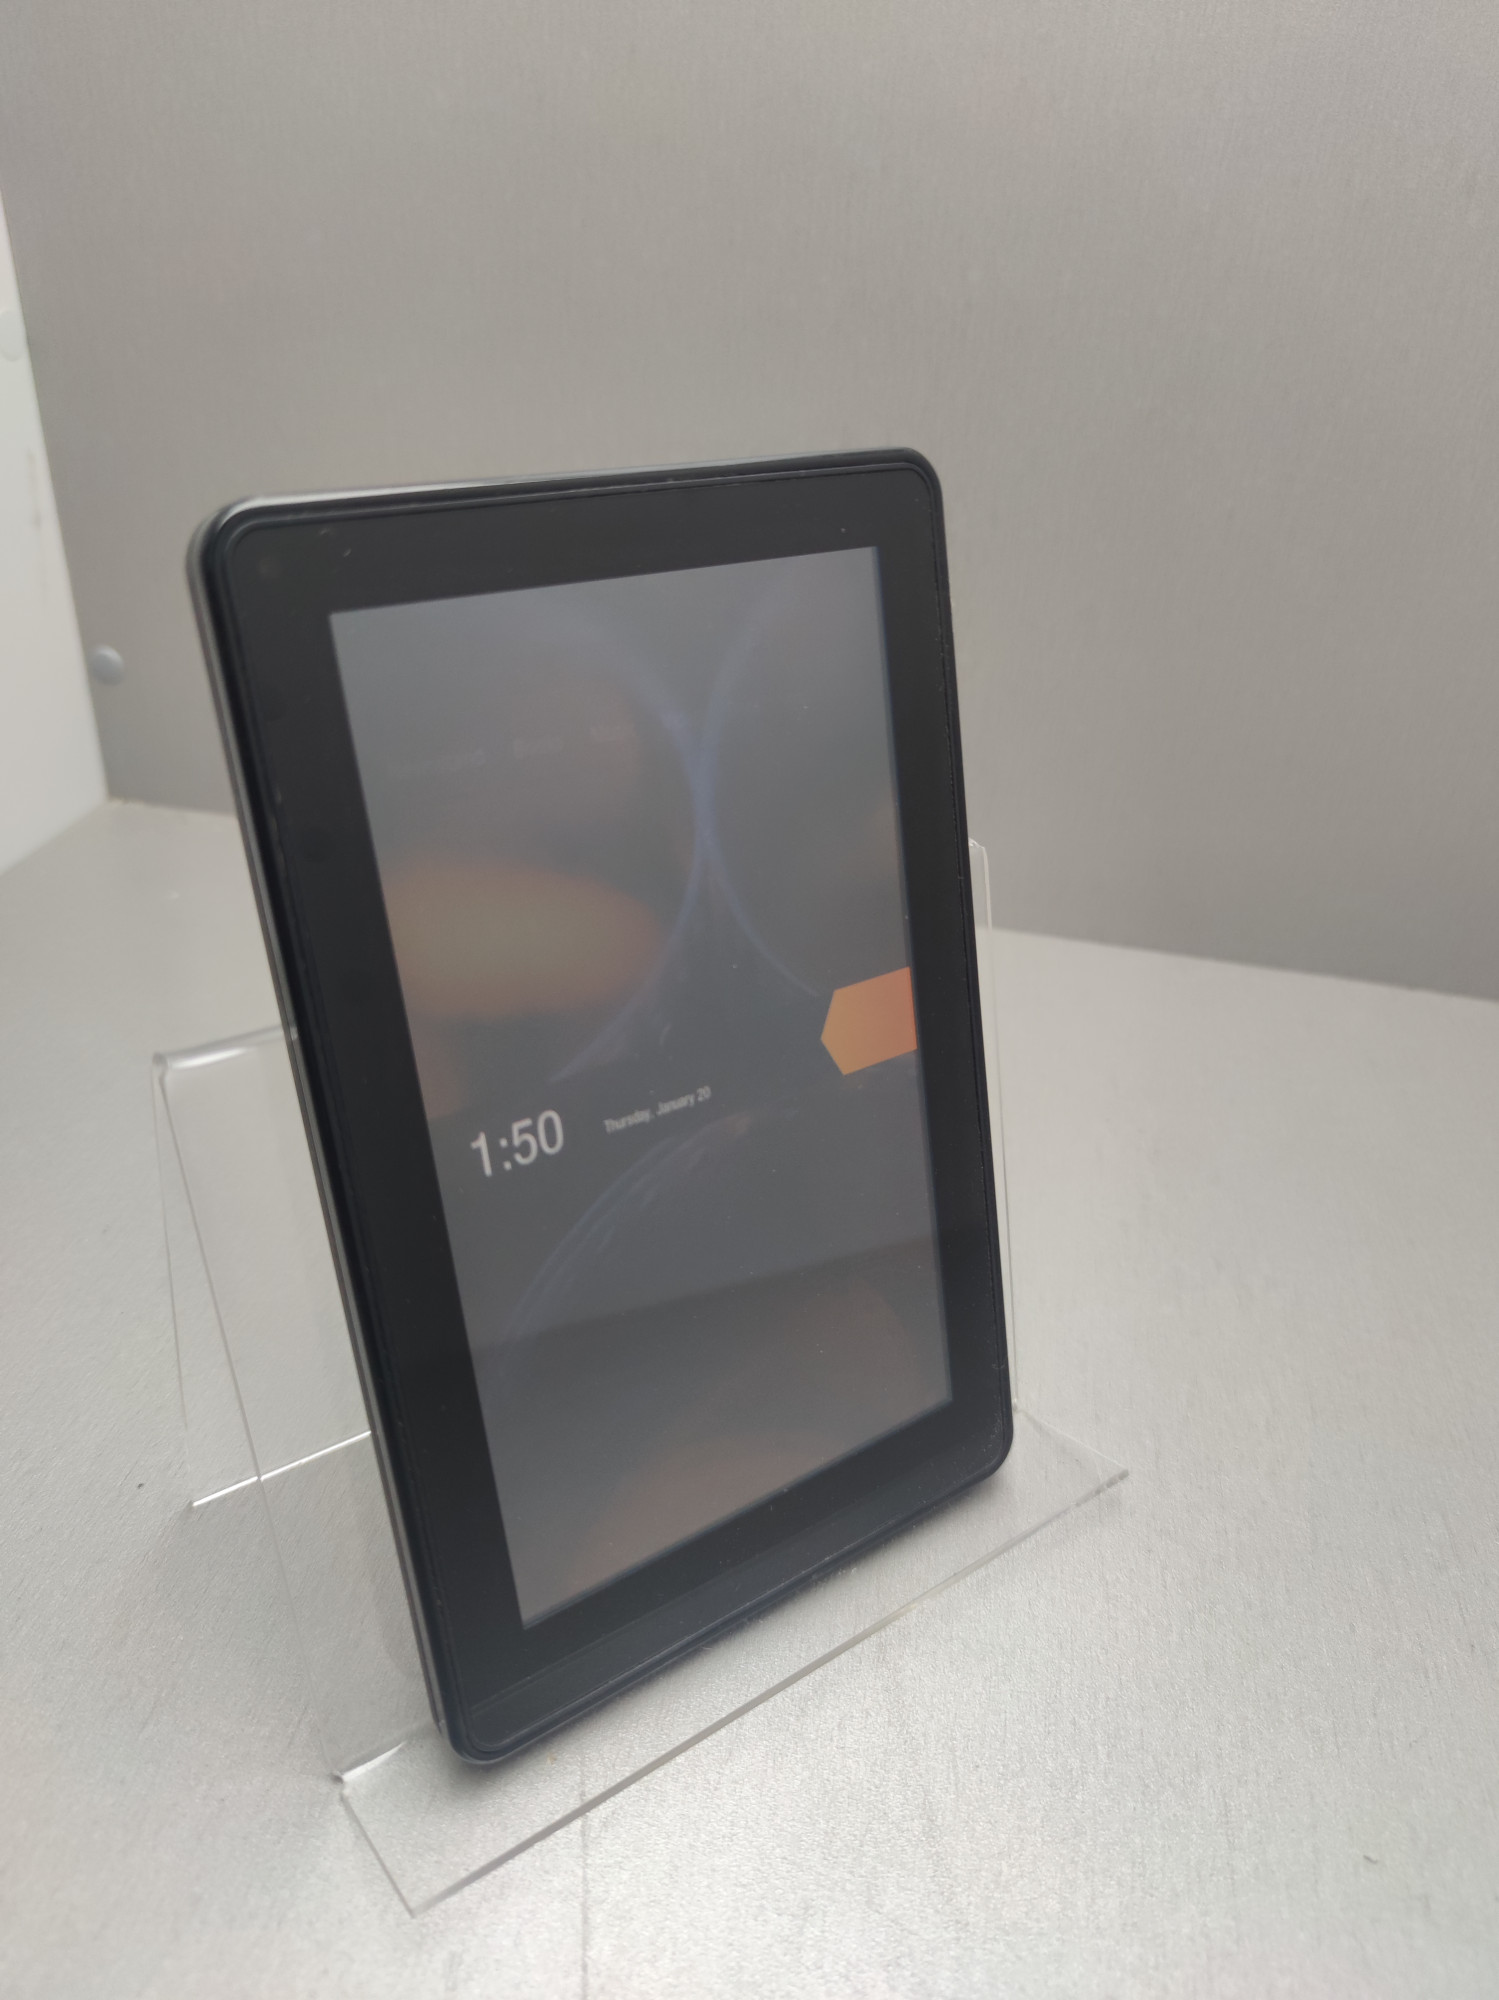 Планшет Amazon Kindle Fire 7 8gb  4